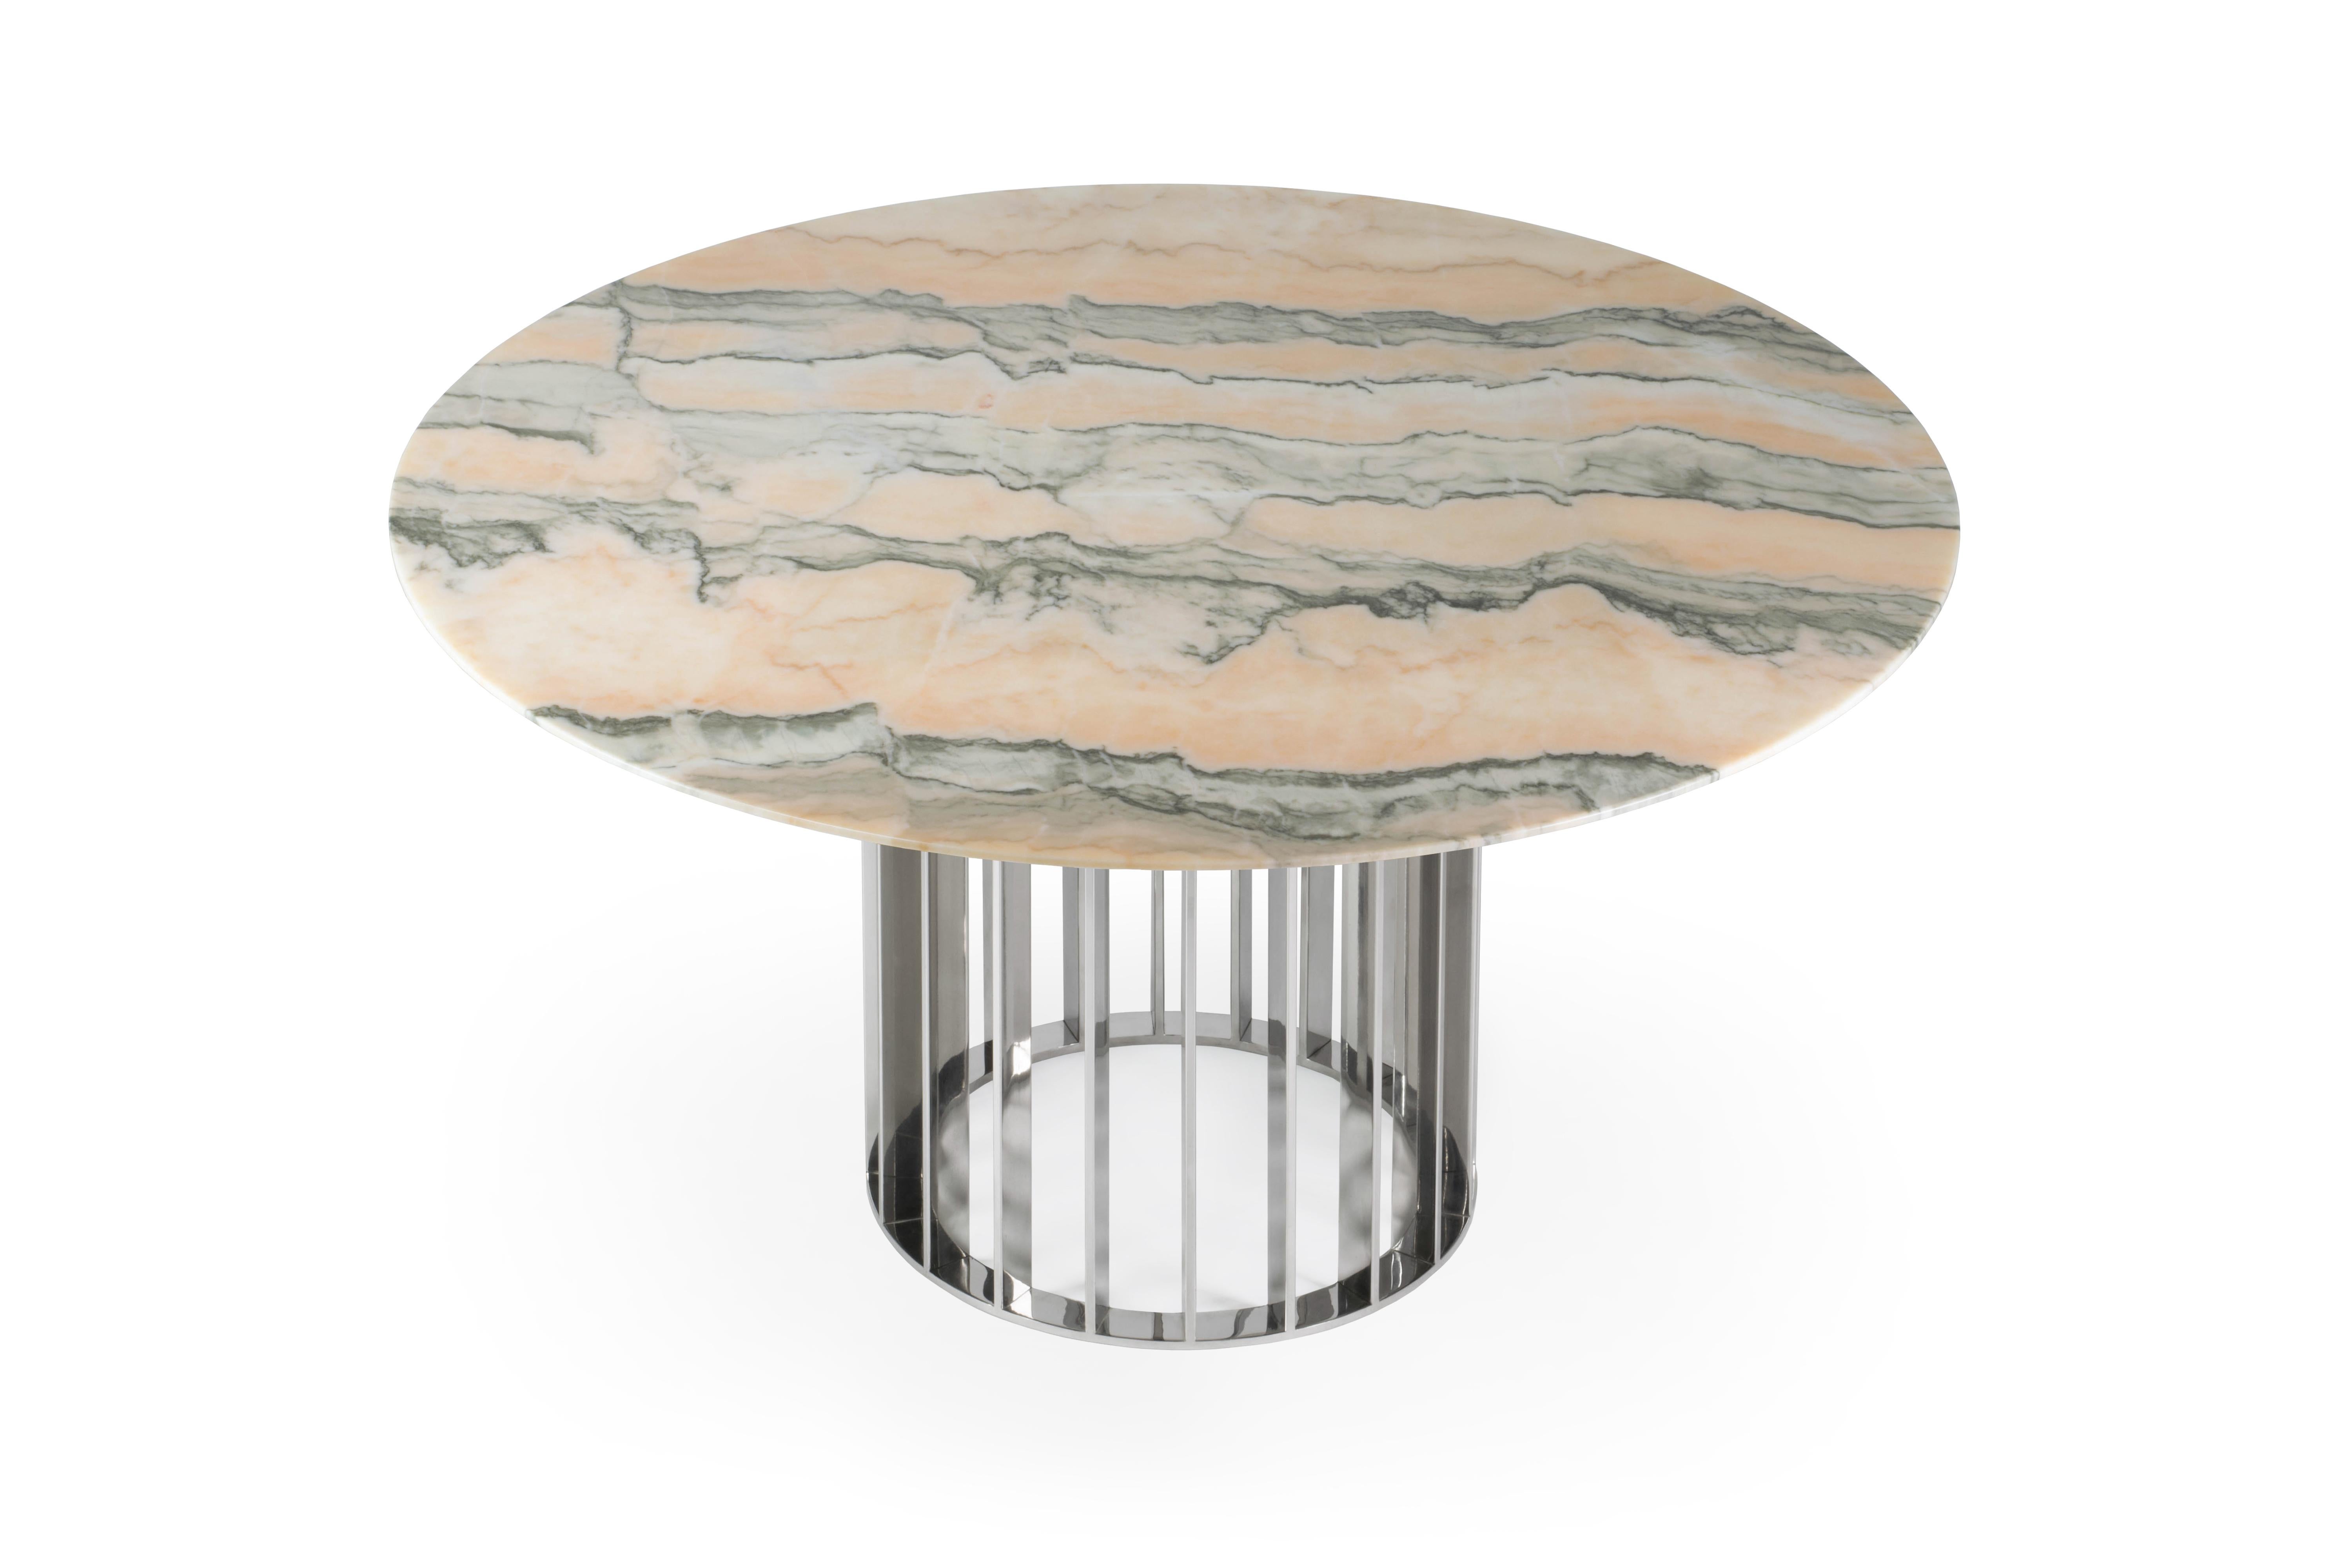 Cette table de salle à manger unique utilise un magnifique plateau en marbre blanc de Carrare à finition mate et une base élégante et moderne en acier inoxydable. La répétition des rayures métalliques donne du rythme à la base. Son design est